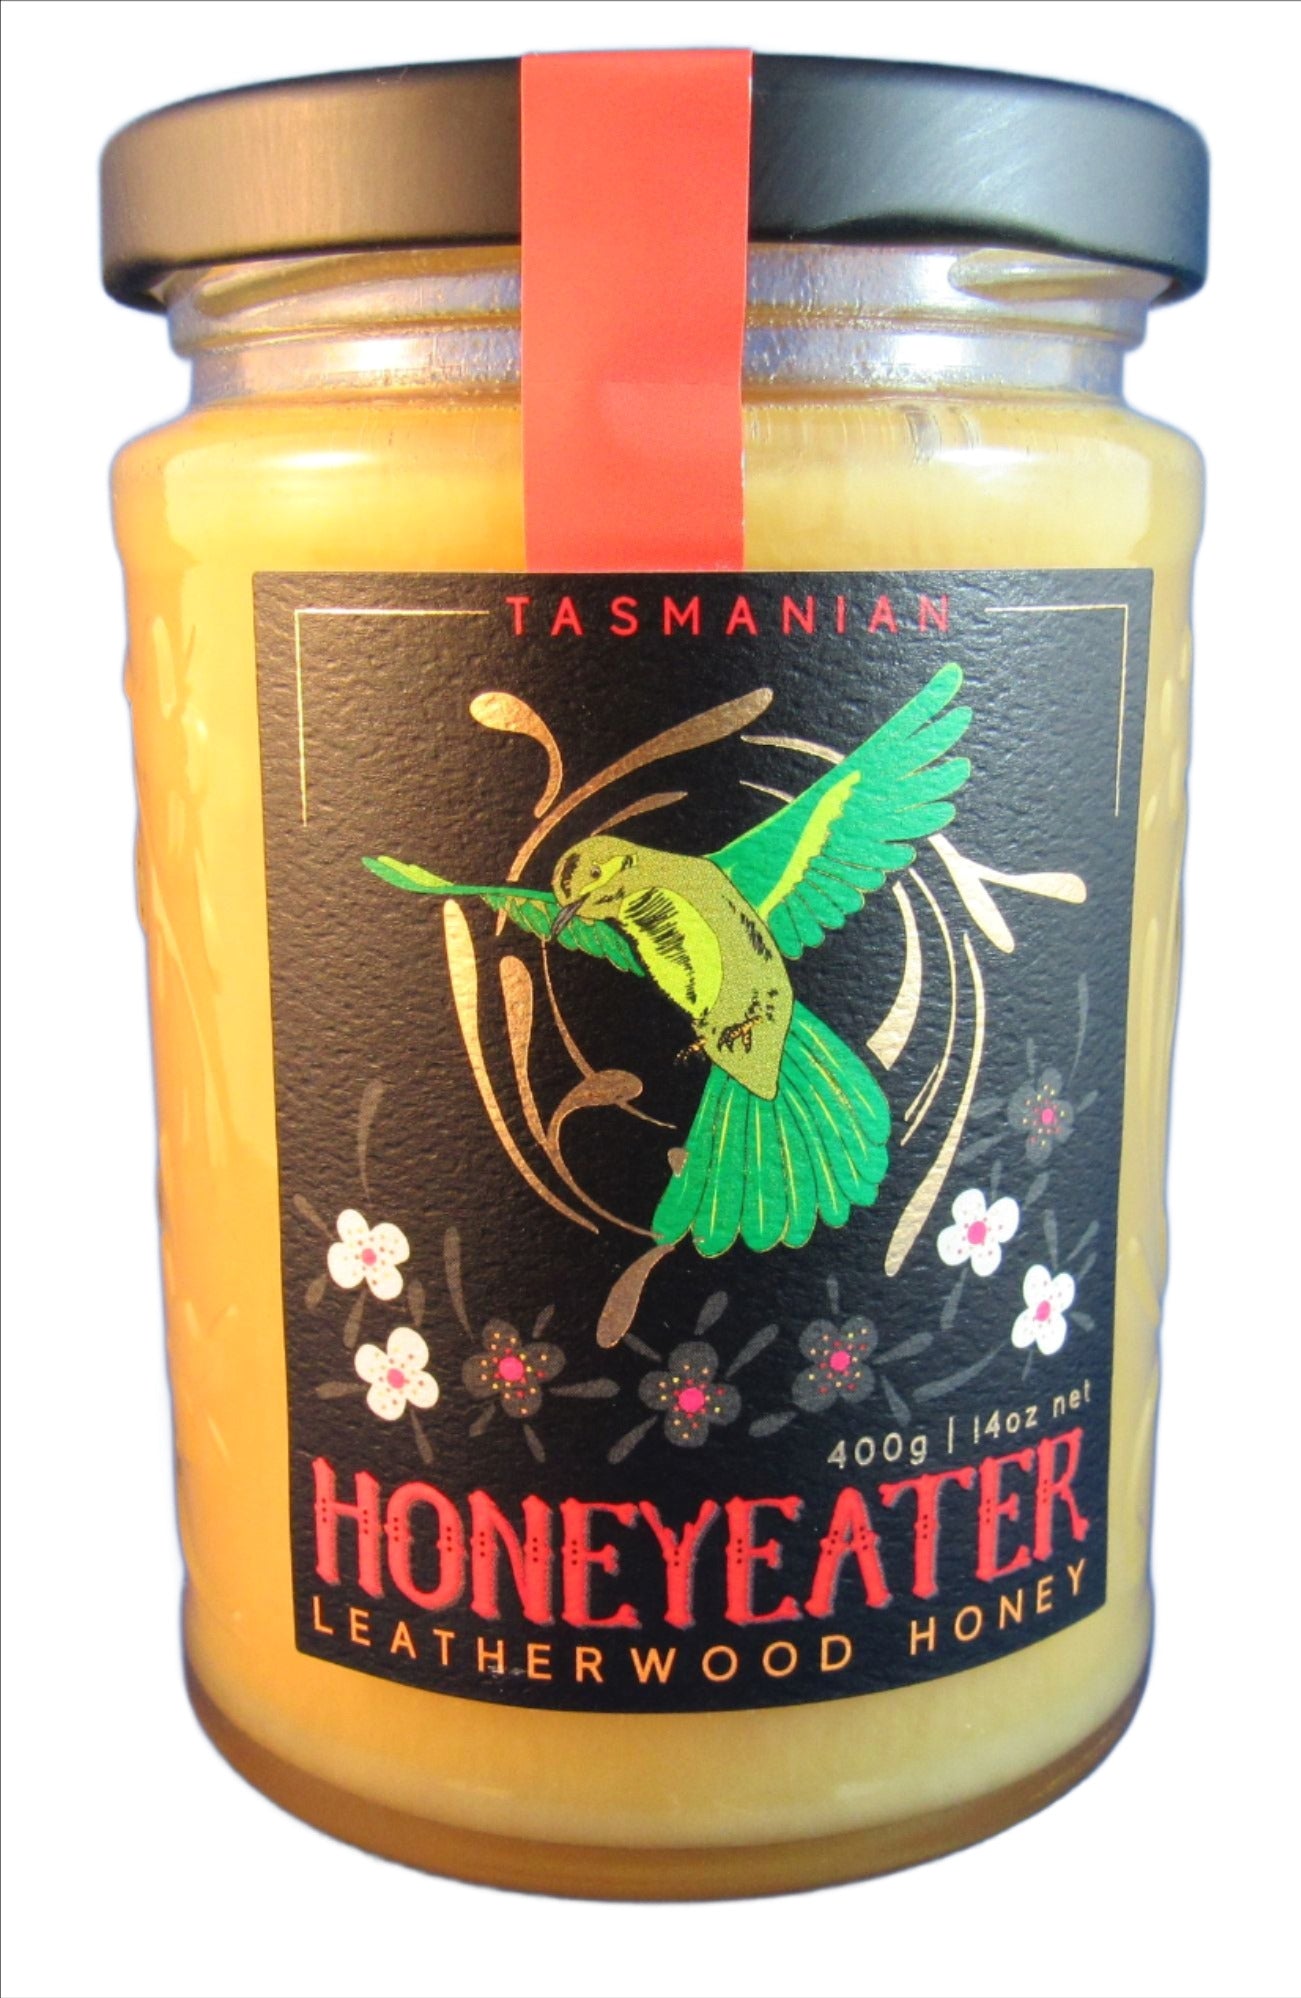 Honeyeater jar of Tasmanian leatherwood honey